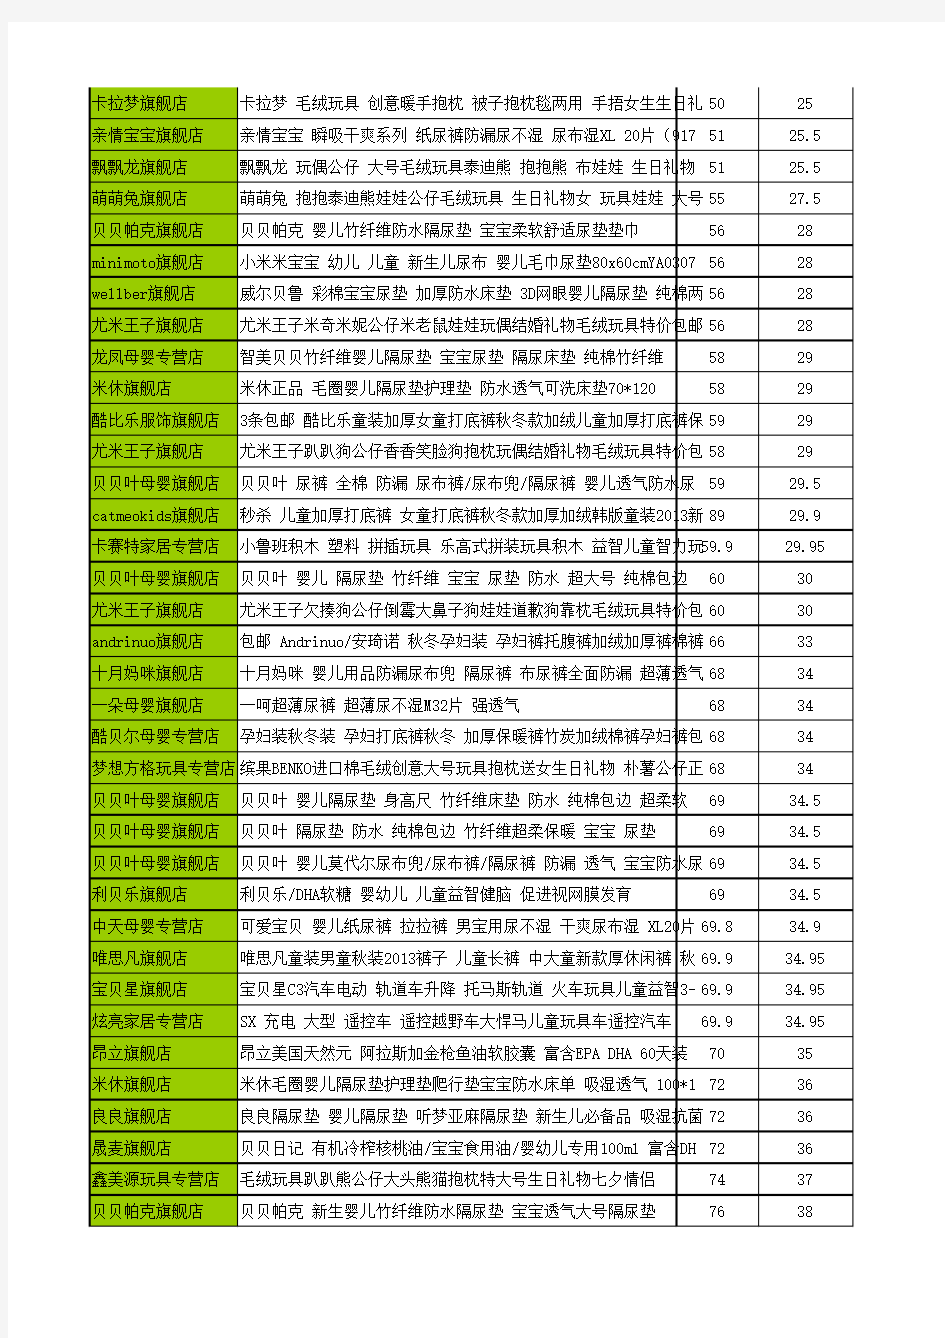 2013淘宝双十一购物狂欢节促销商品清单(完整版)